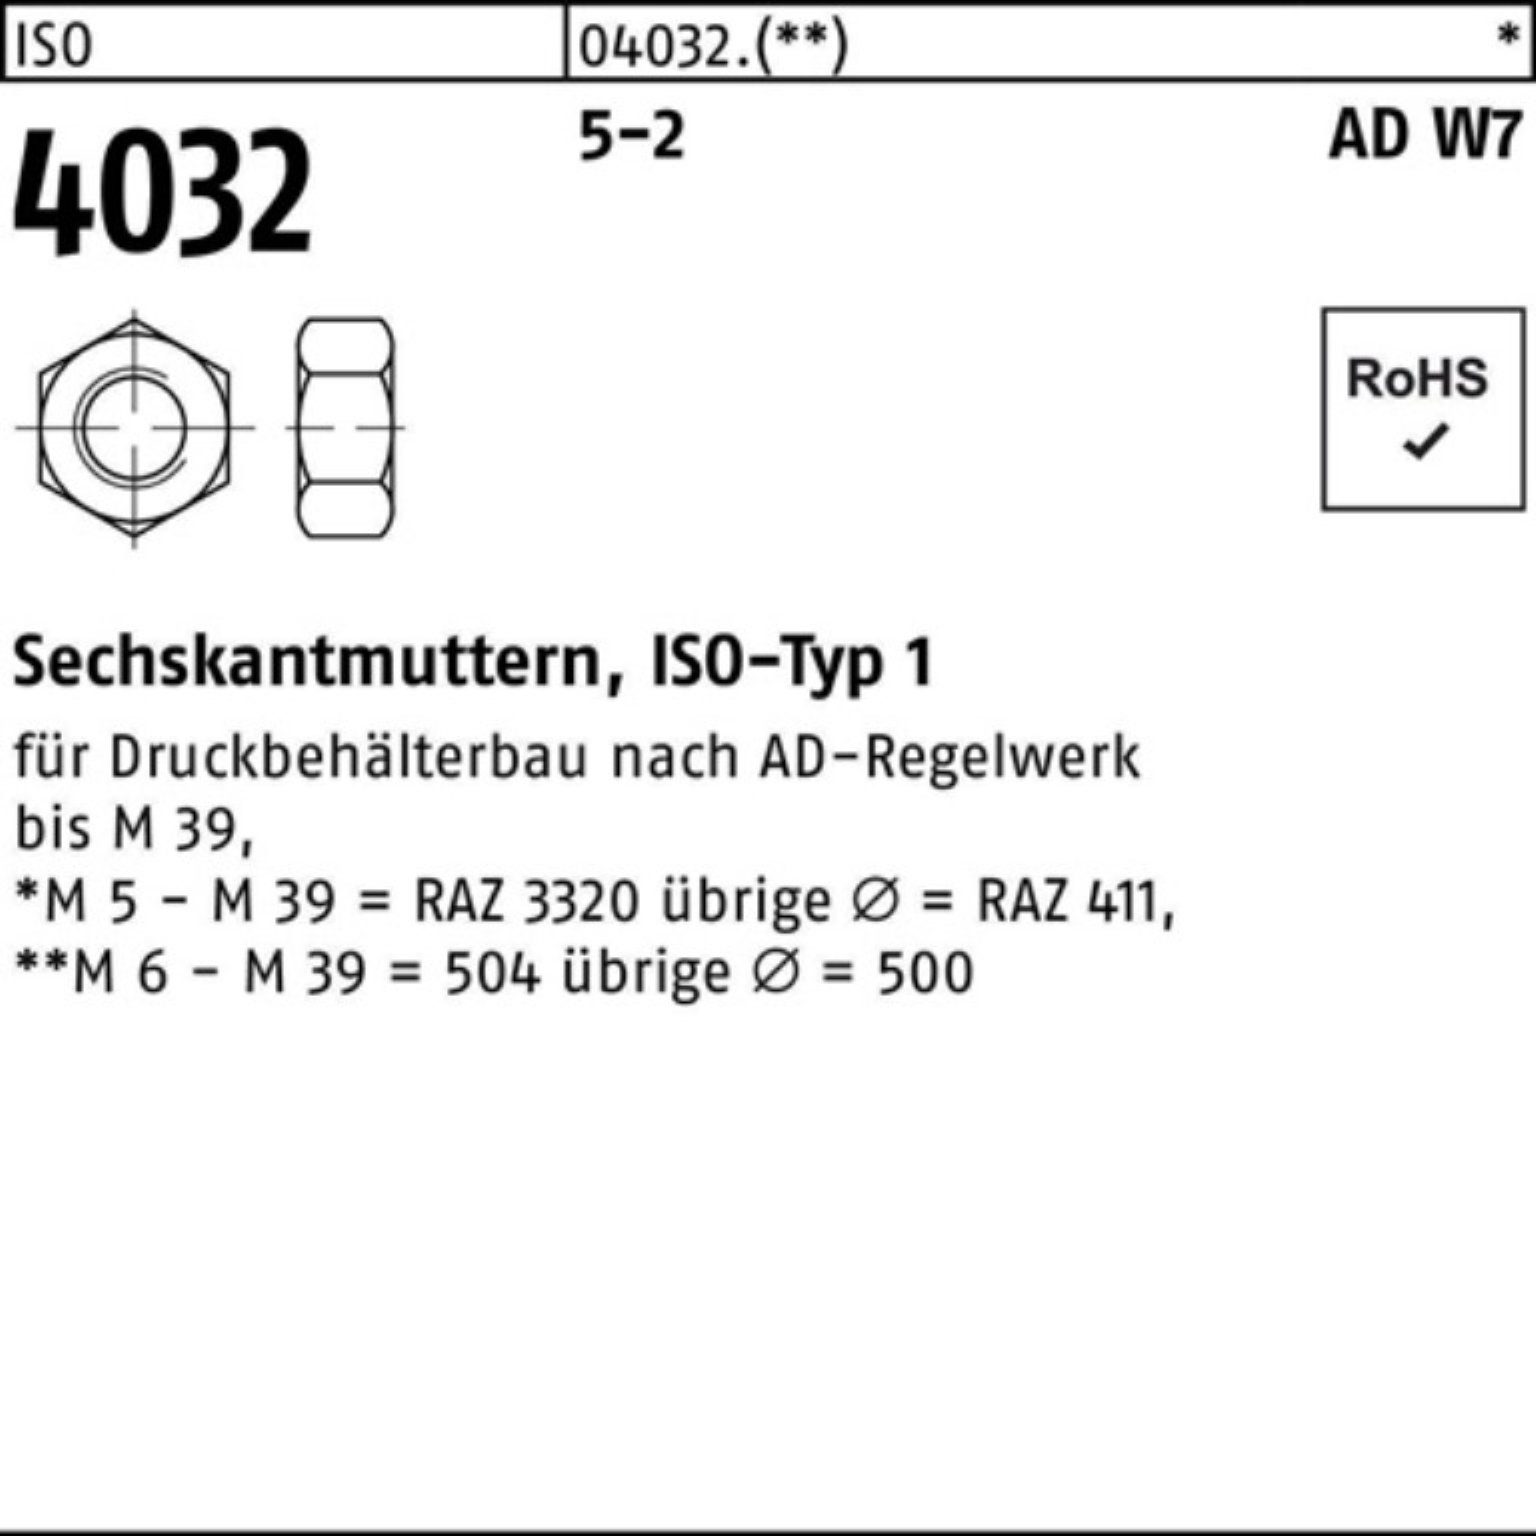 Bufab Muttern 100er Pack Sechskantmutter ISO 4032 M36 5-2 AD W7 10 Stück ISO 4032 5